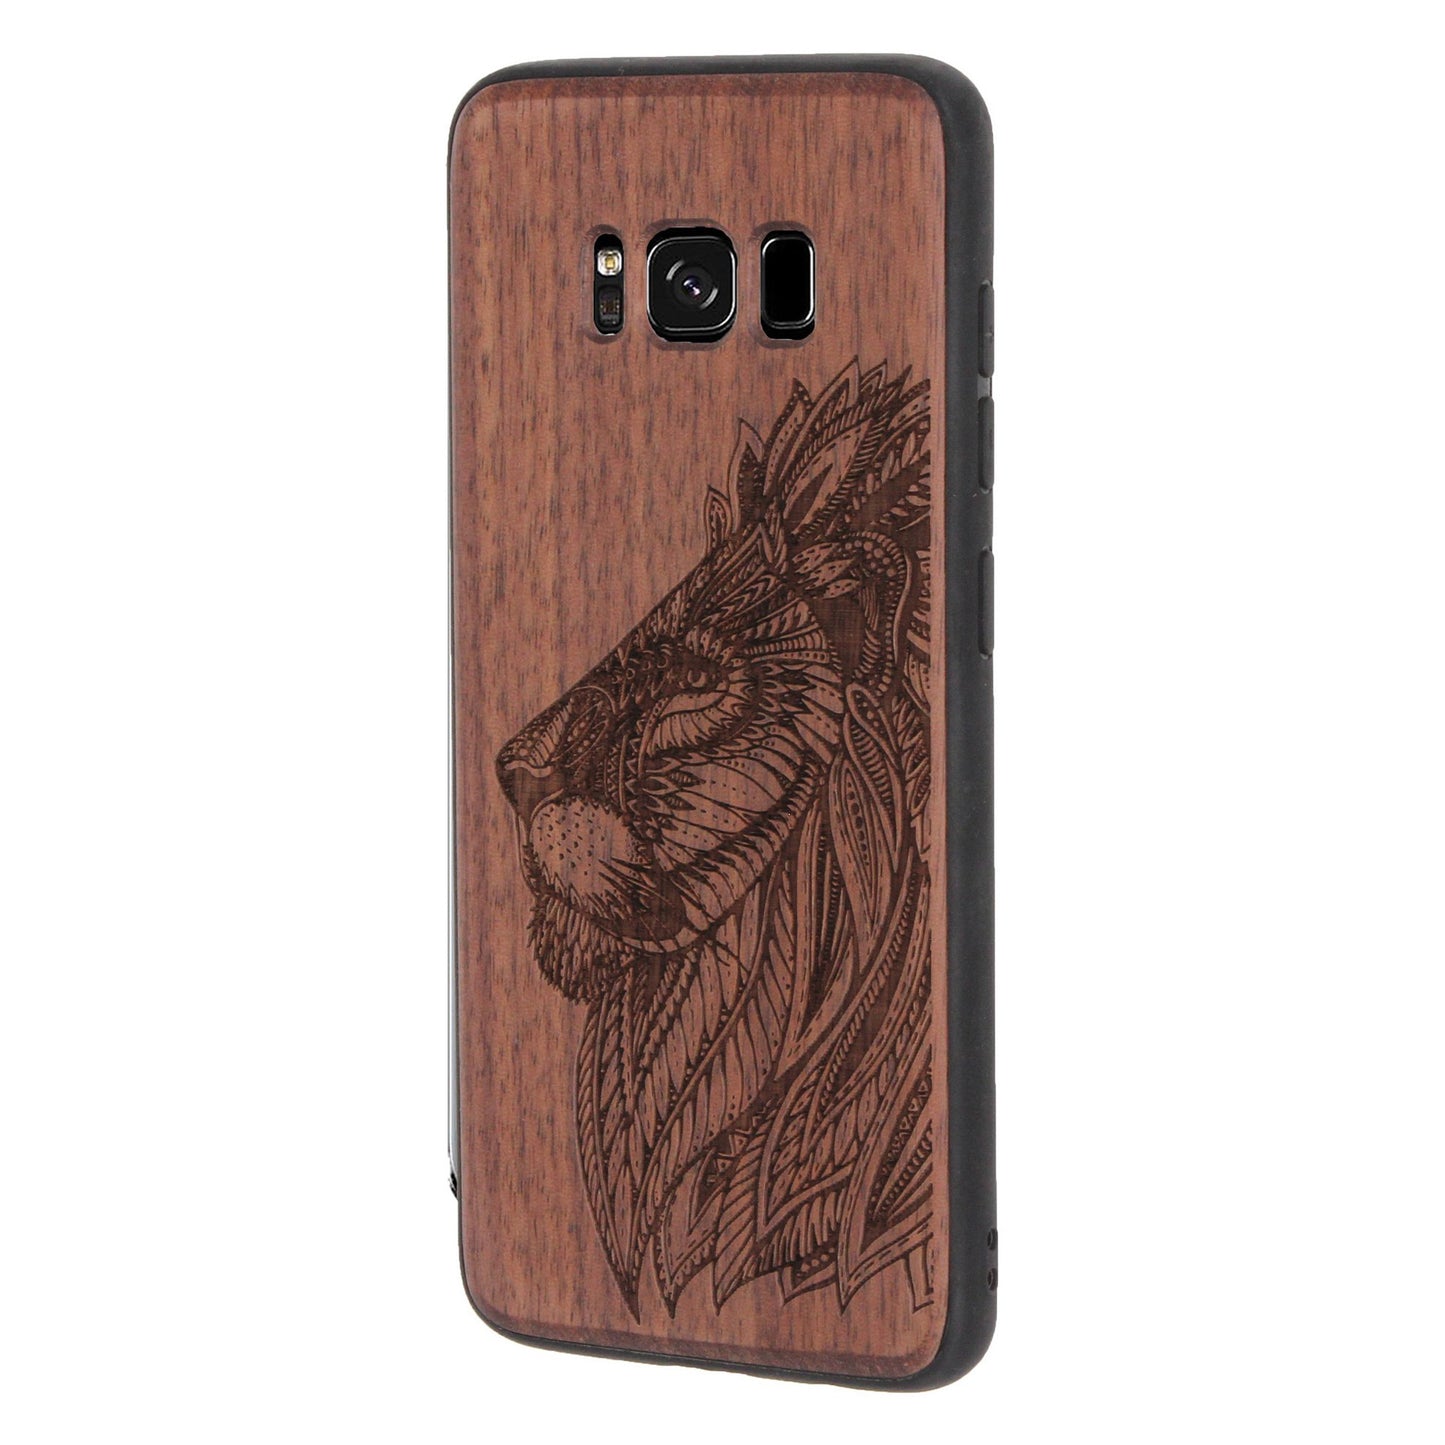 Löwen Eden Case aus Nussbaumholz für Samsung Galaxy S8